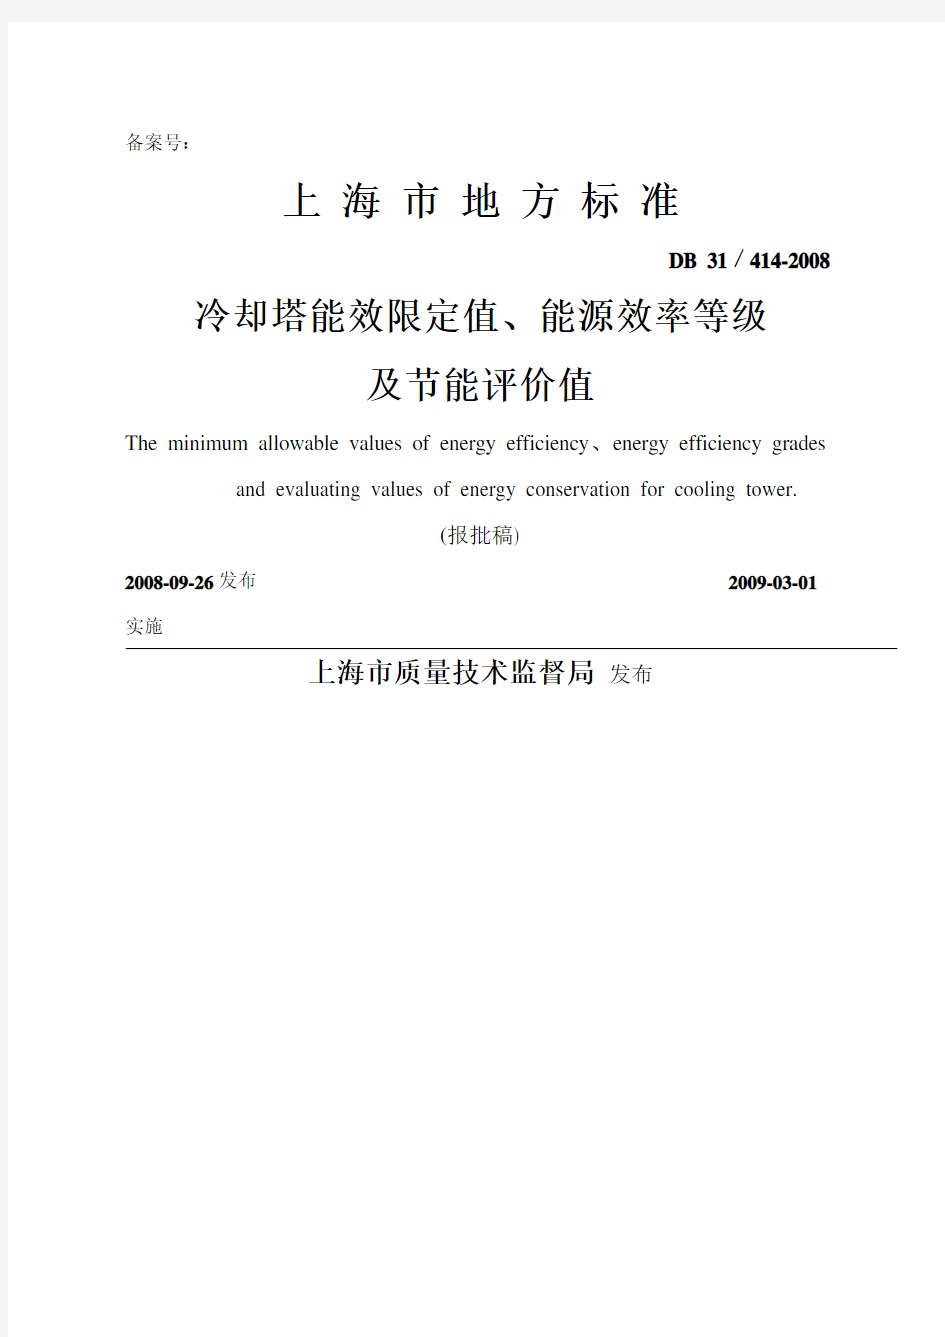 上海市地方标准《冷却塔能效限定值、能源效率等级及节能评价值》